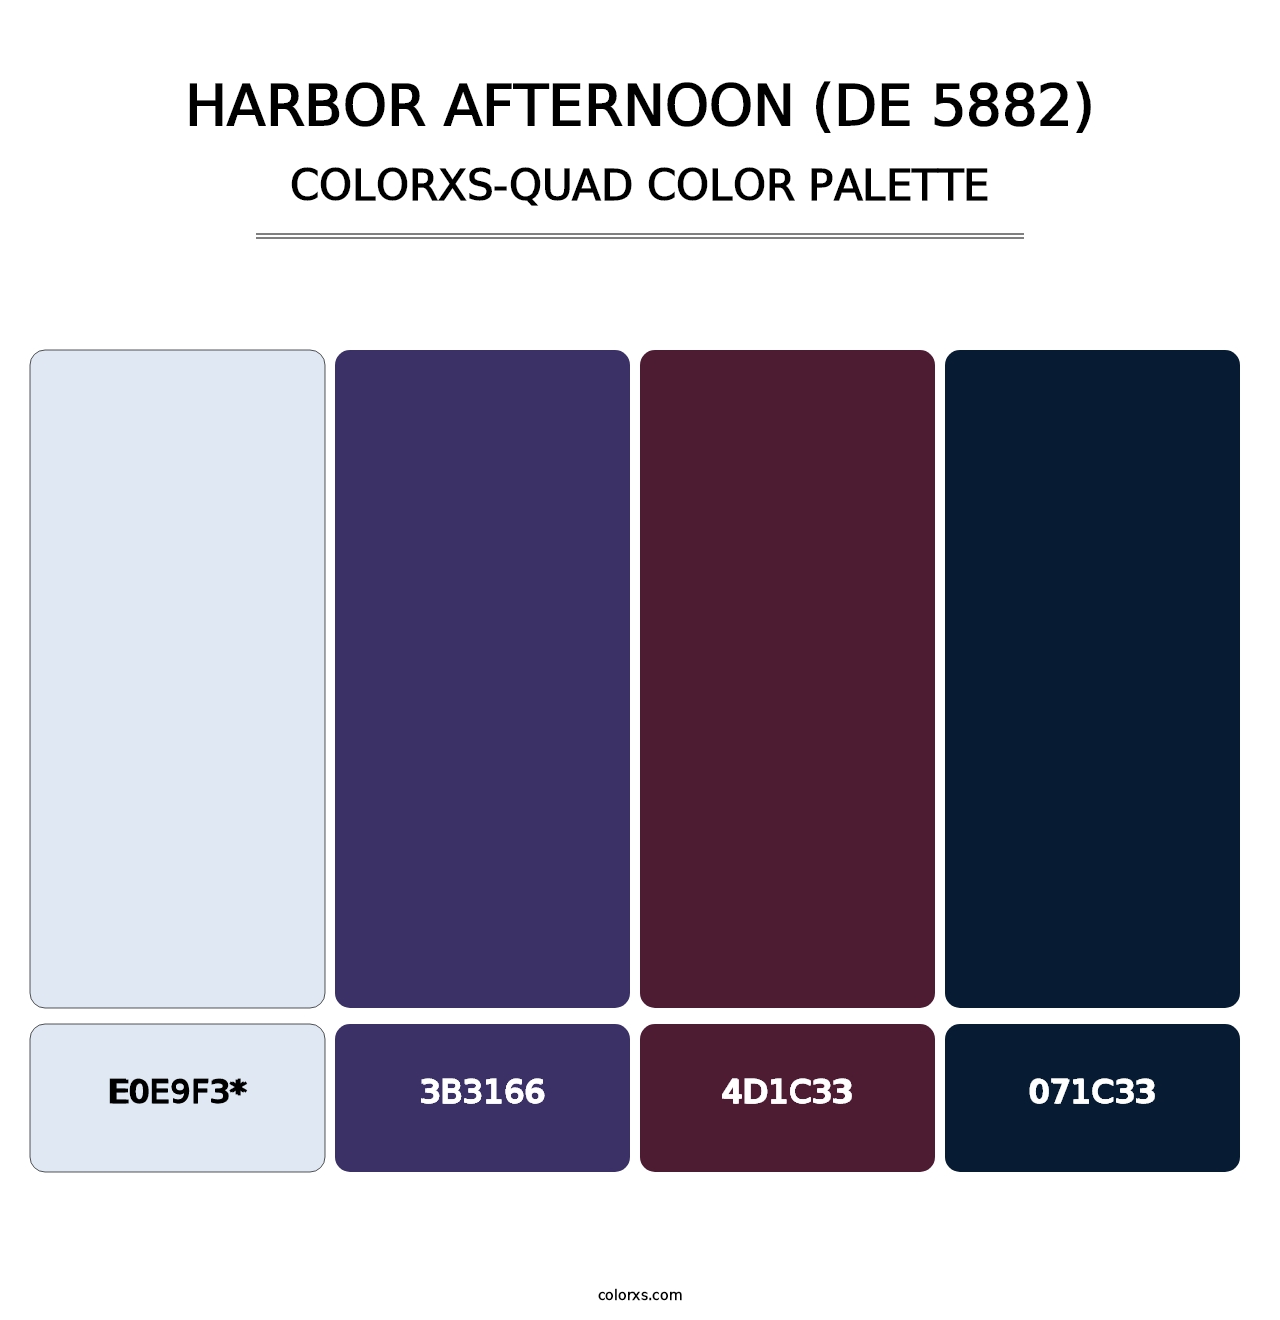 Harbor Afternoon (DE 5882) - Colorxs Quad Palette